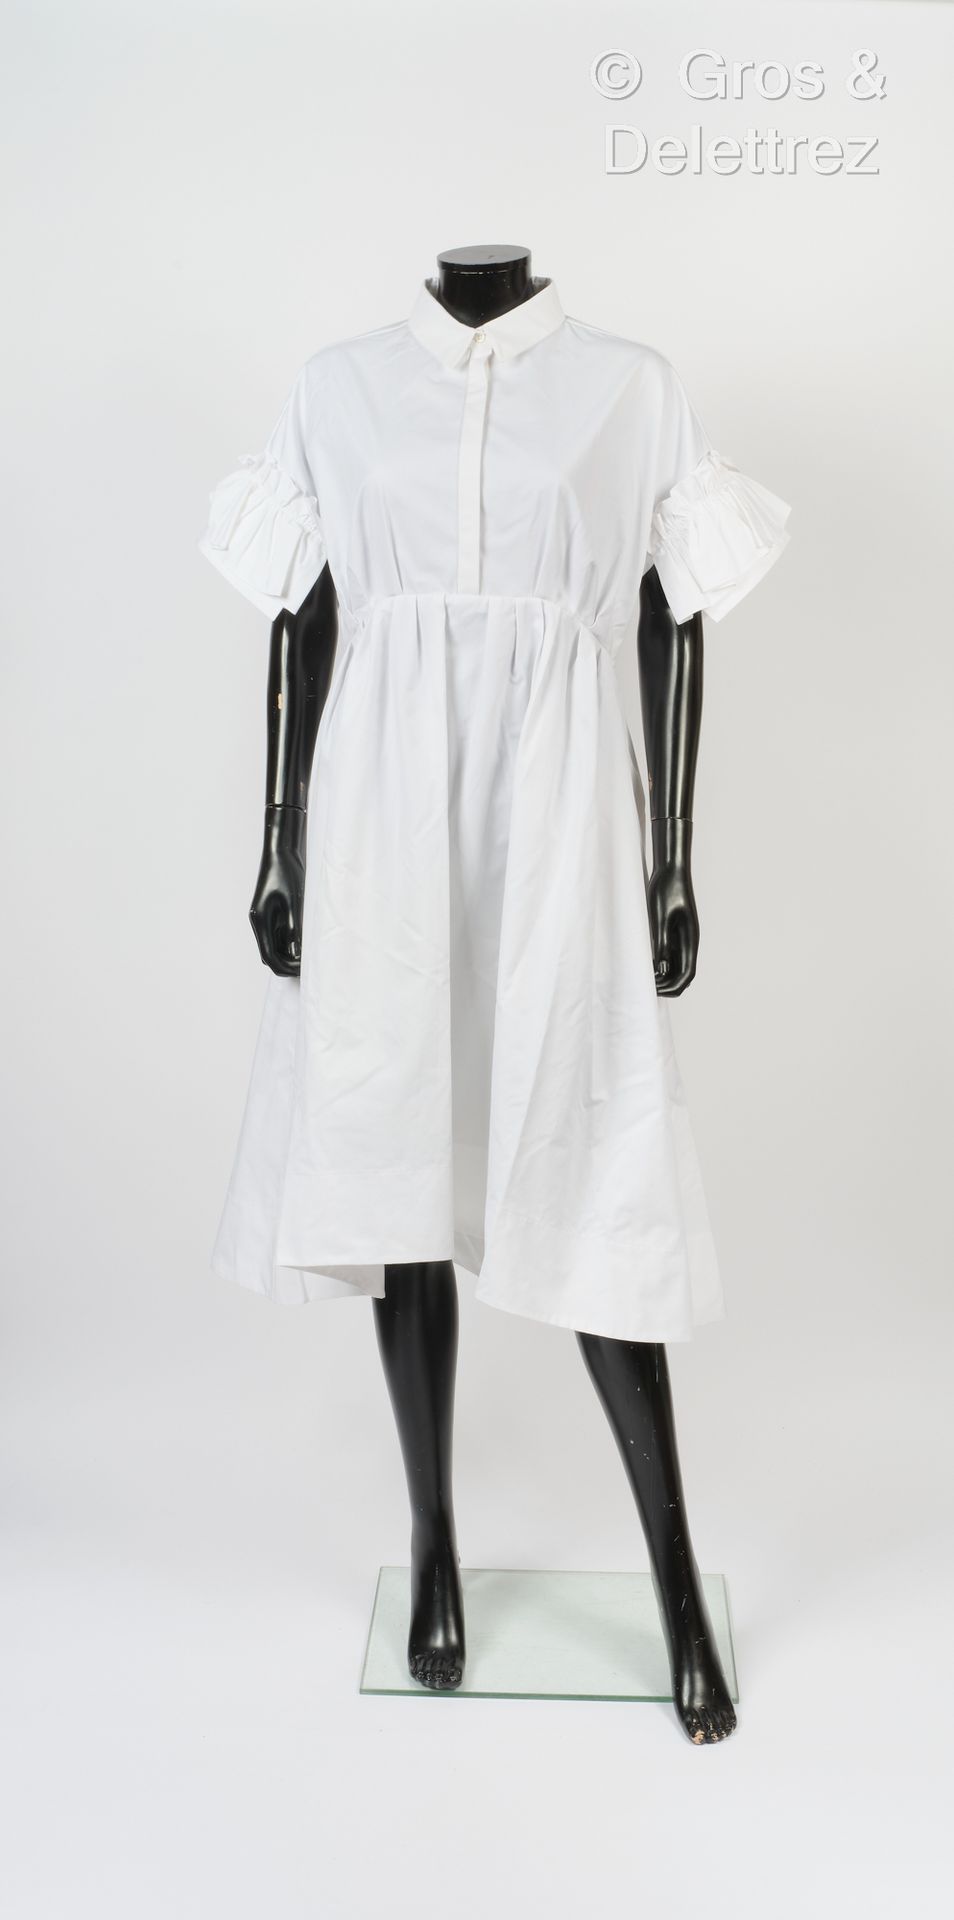 Dice KAYEK 2020年春/夏系列
白色棉质连衣裙，小领子，上衣有纽扣，短袖末端有褶皱，裙摆呈喇叭状。T. 42.